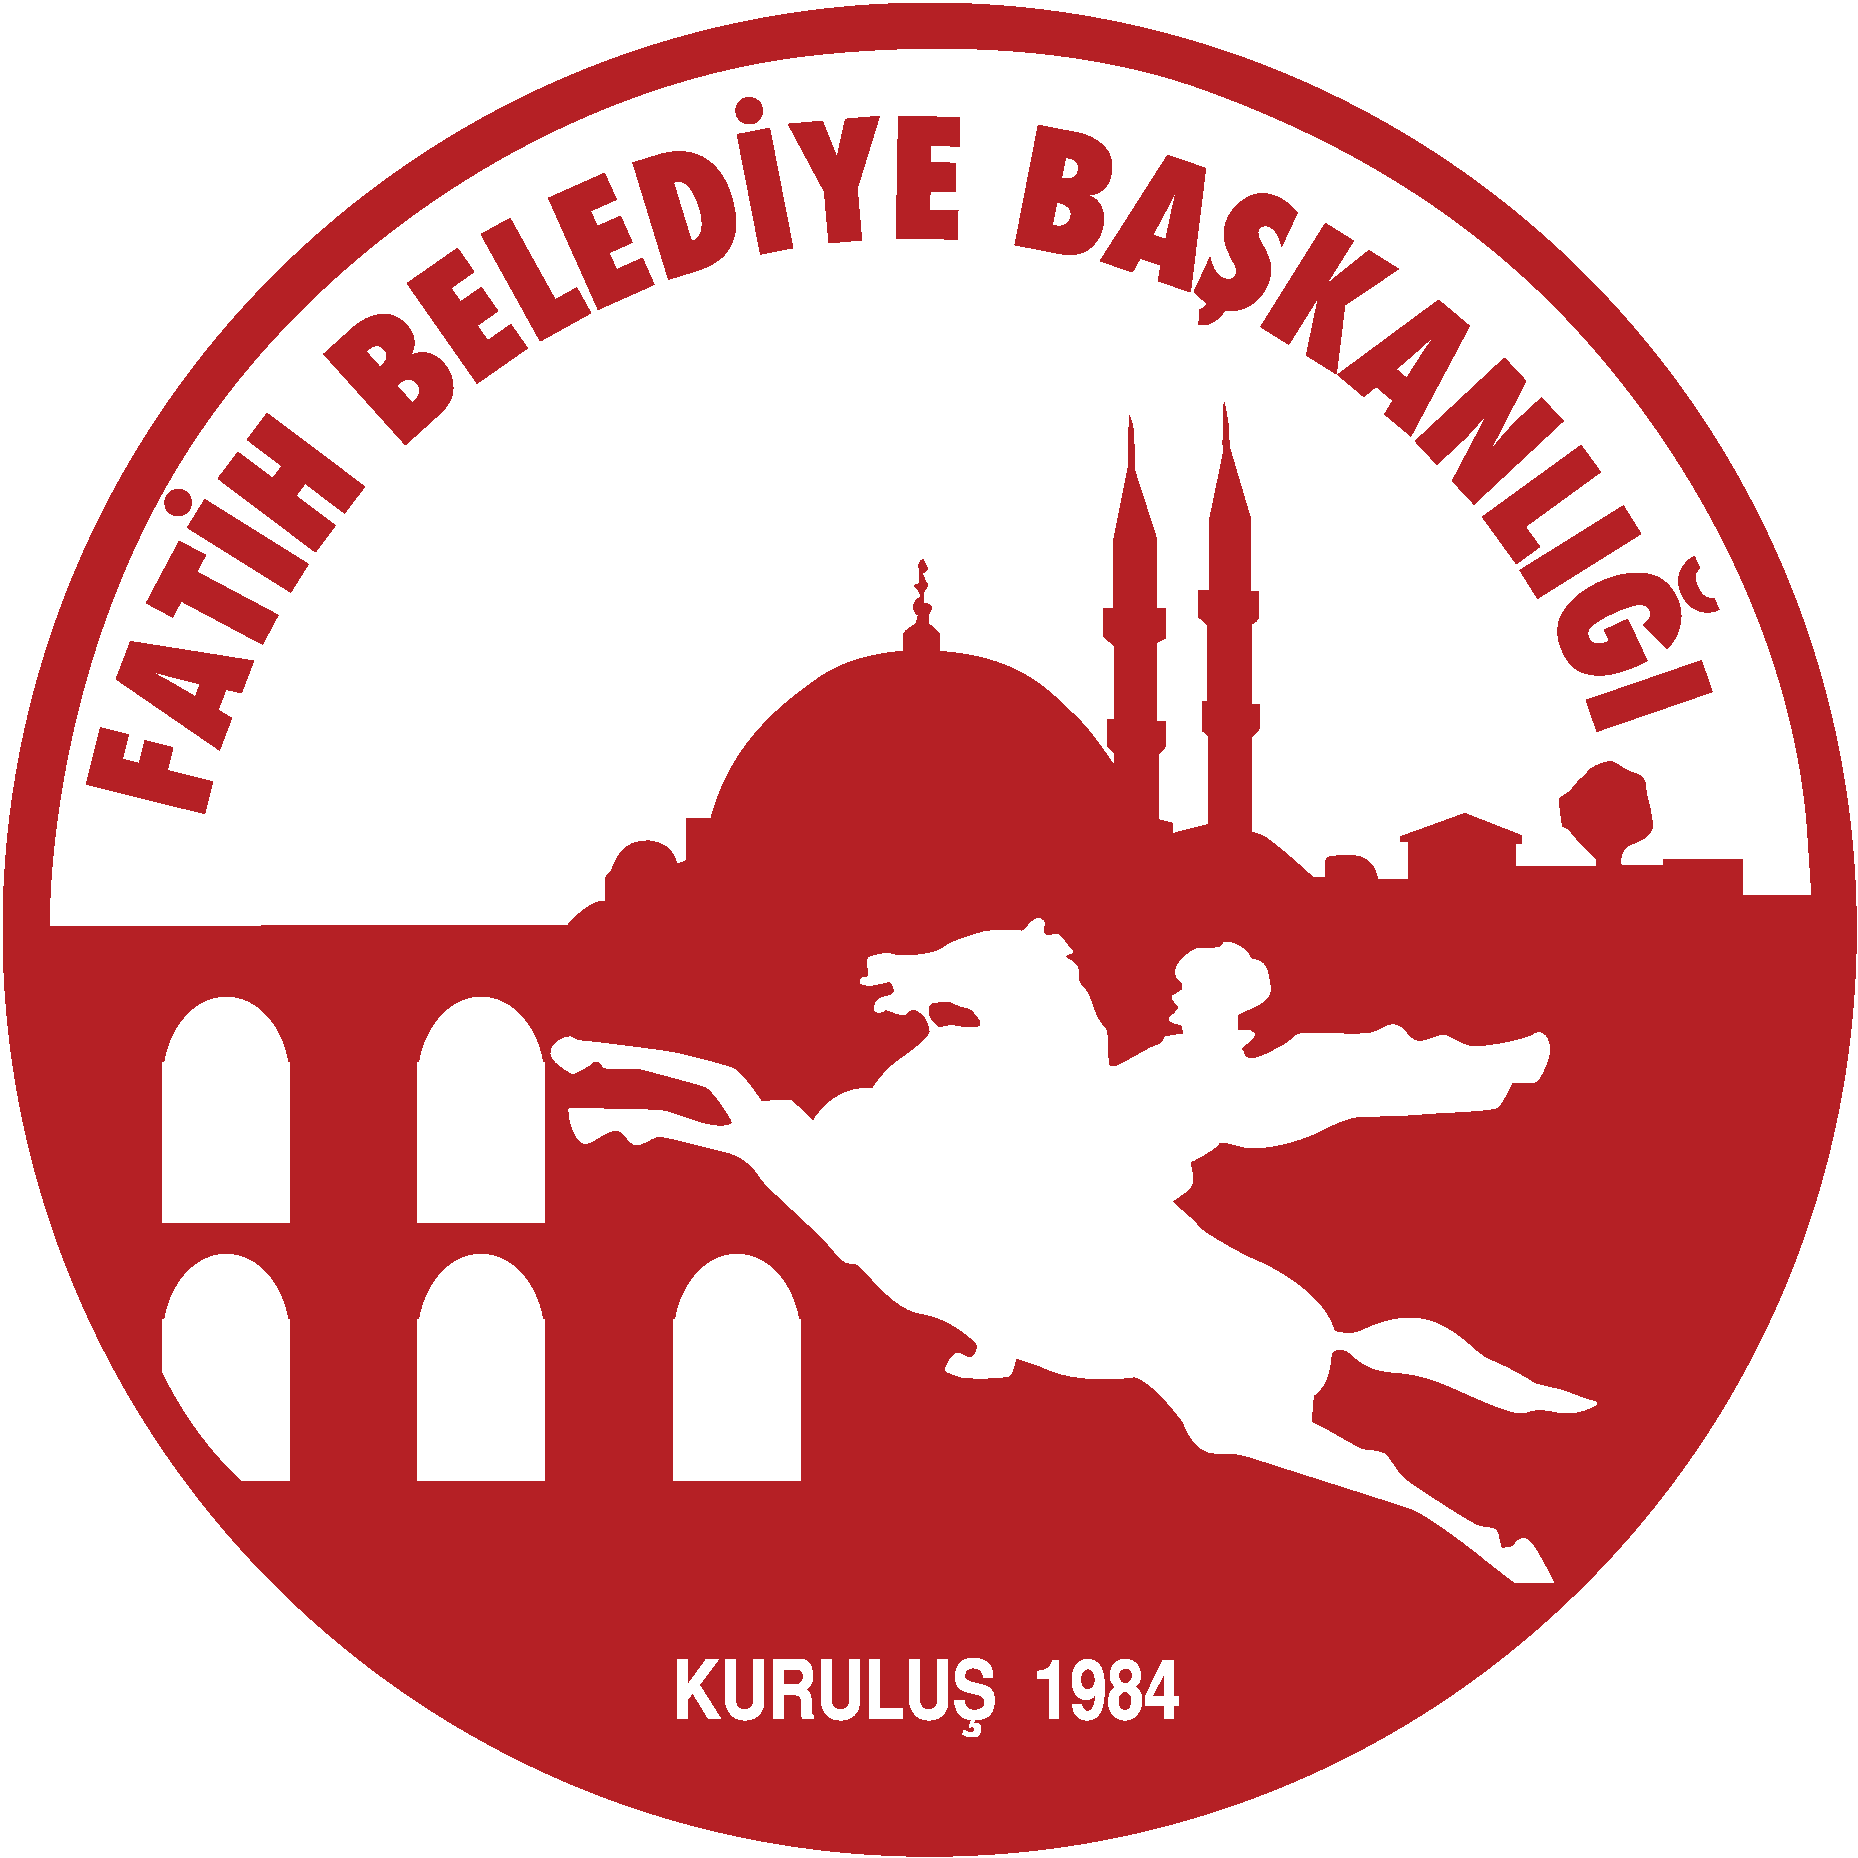 Fatih Belediyesi İStanbul Logo Vector